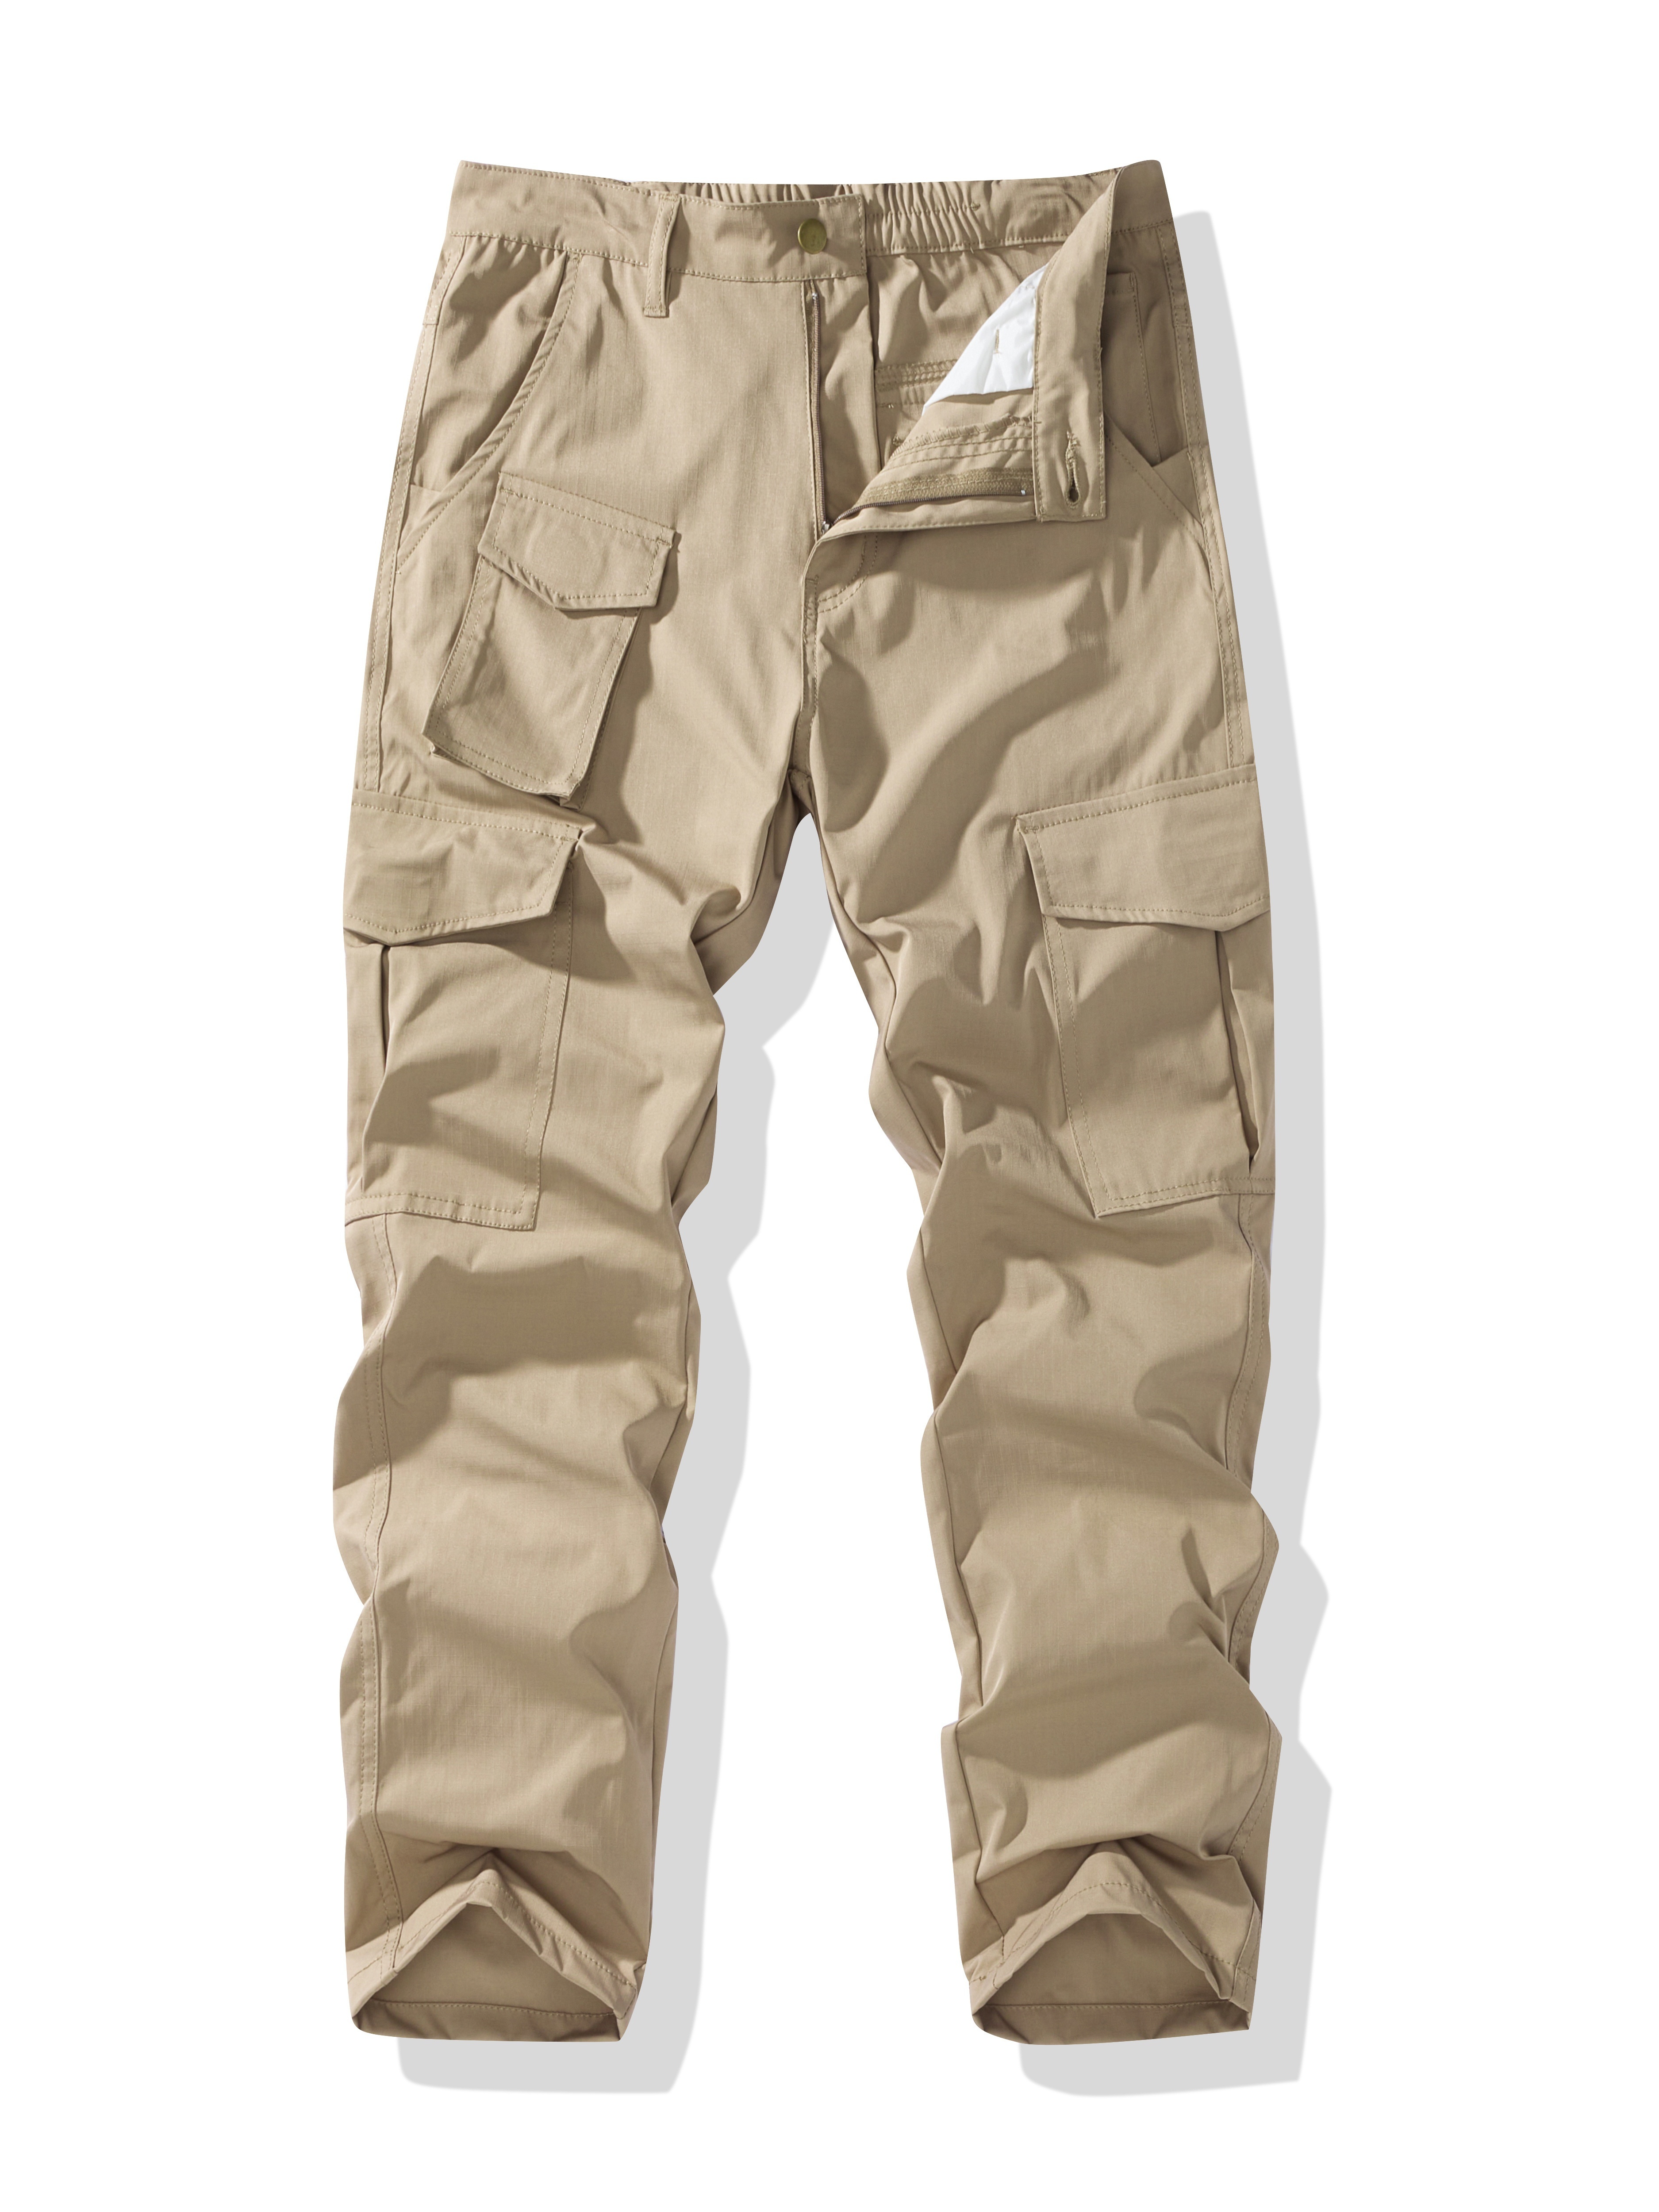 Pantalones Tácticos Militares Cargo Para Hombres Cortos O Largos Ejército  Sólido